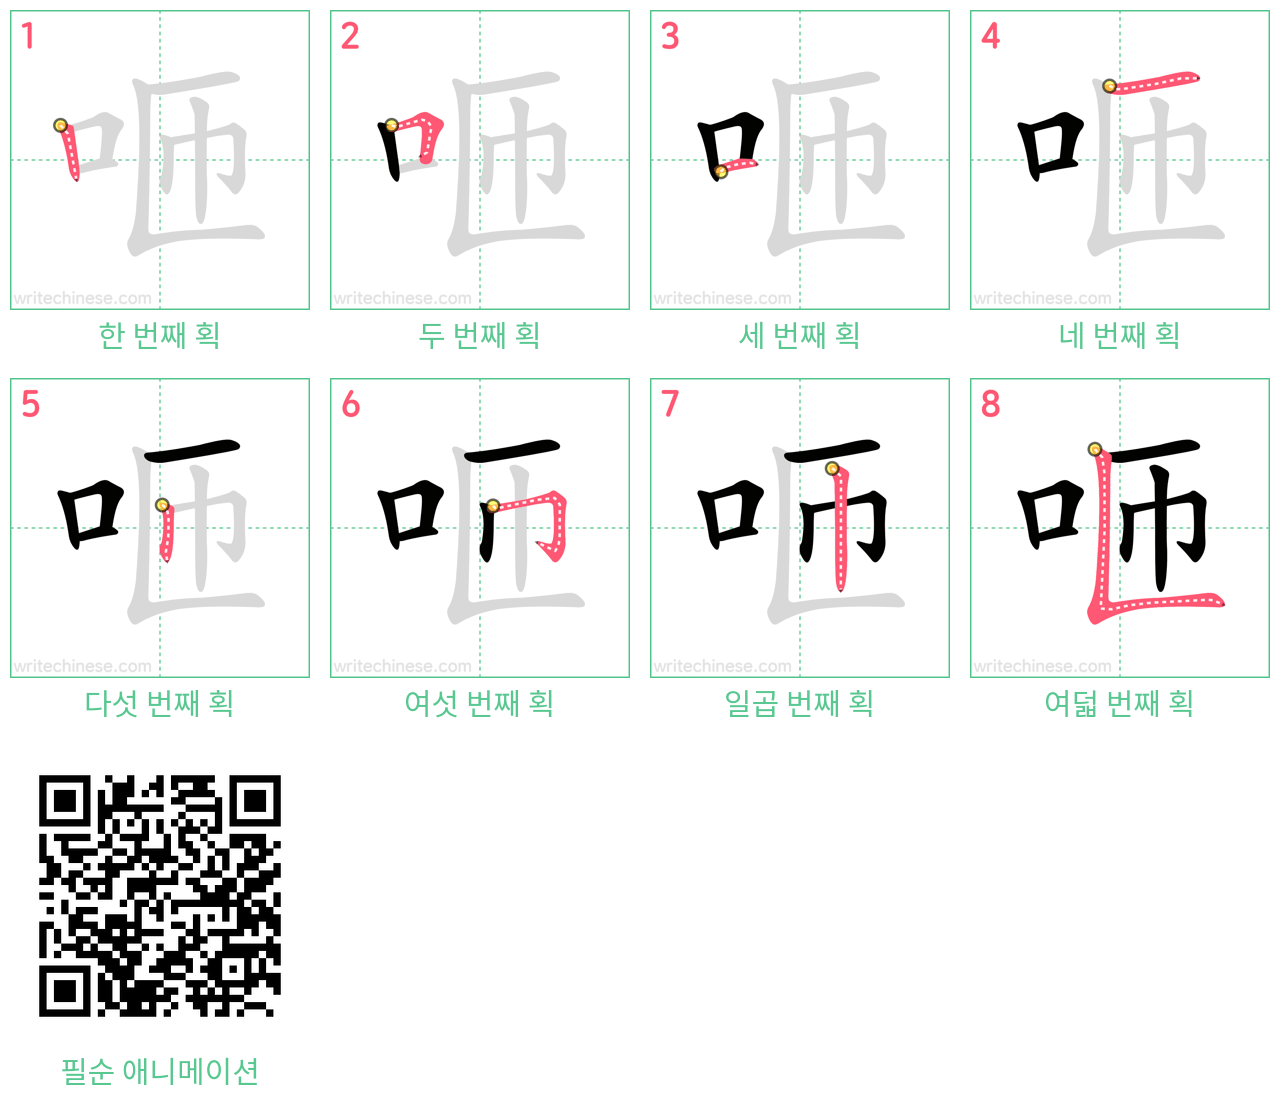 咂 step-by-step stroke order diagrams